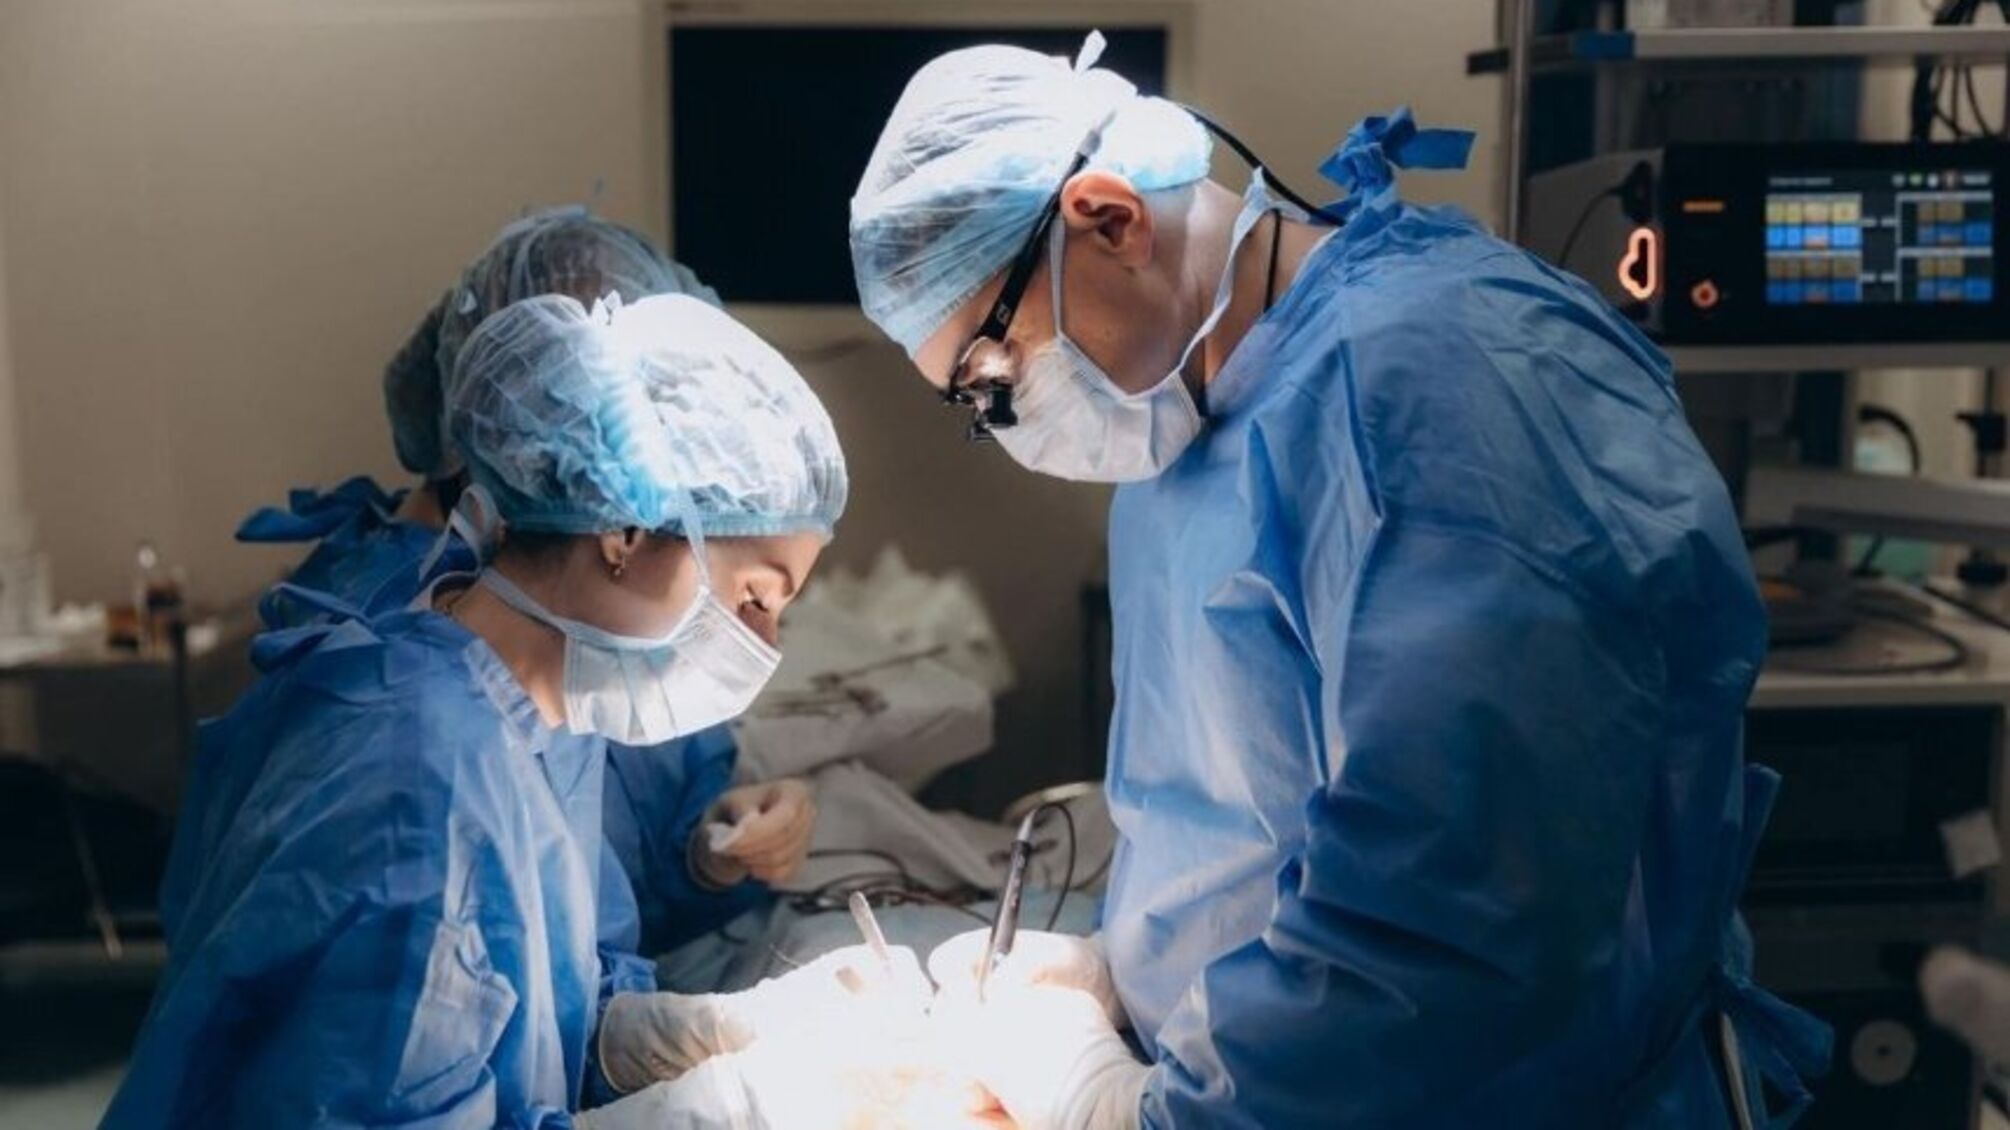 Після операції залишила серветку в тілі 7-річної дитини: на Київщині підозрюється лікарка